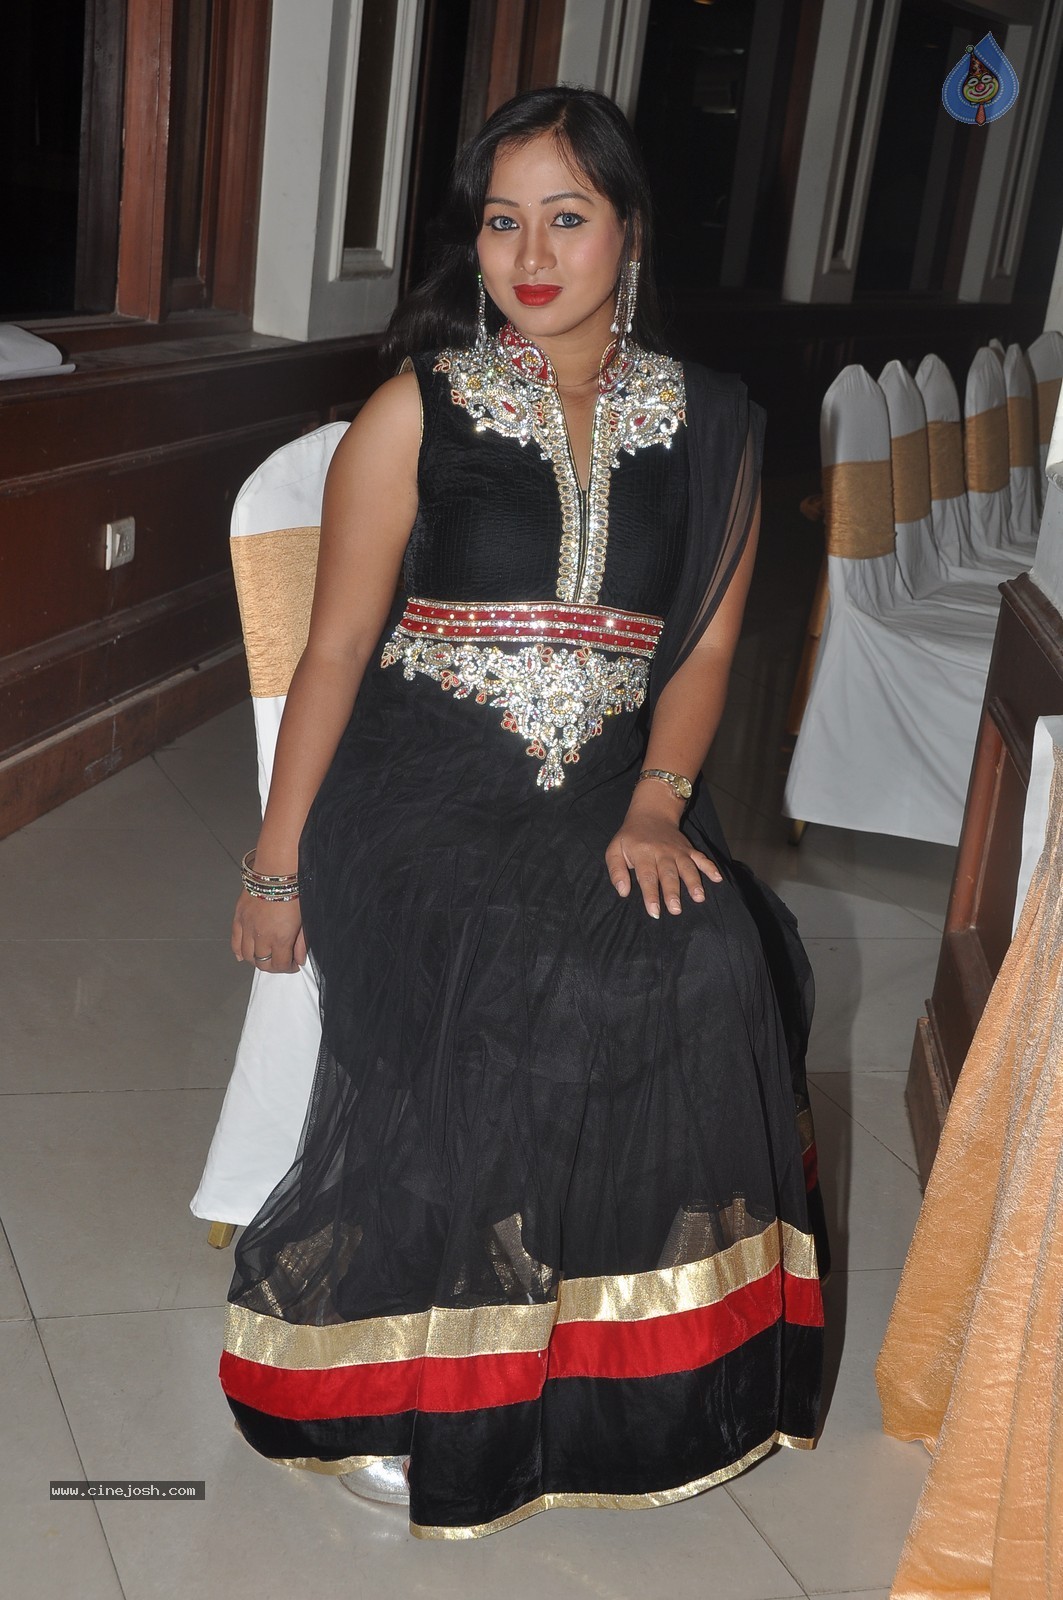 Actress Sneha Photos - 6 / 62 photos